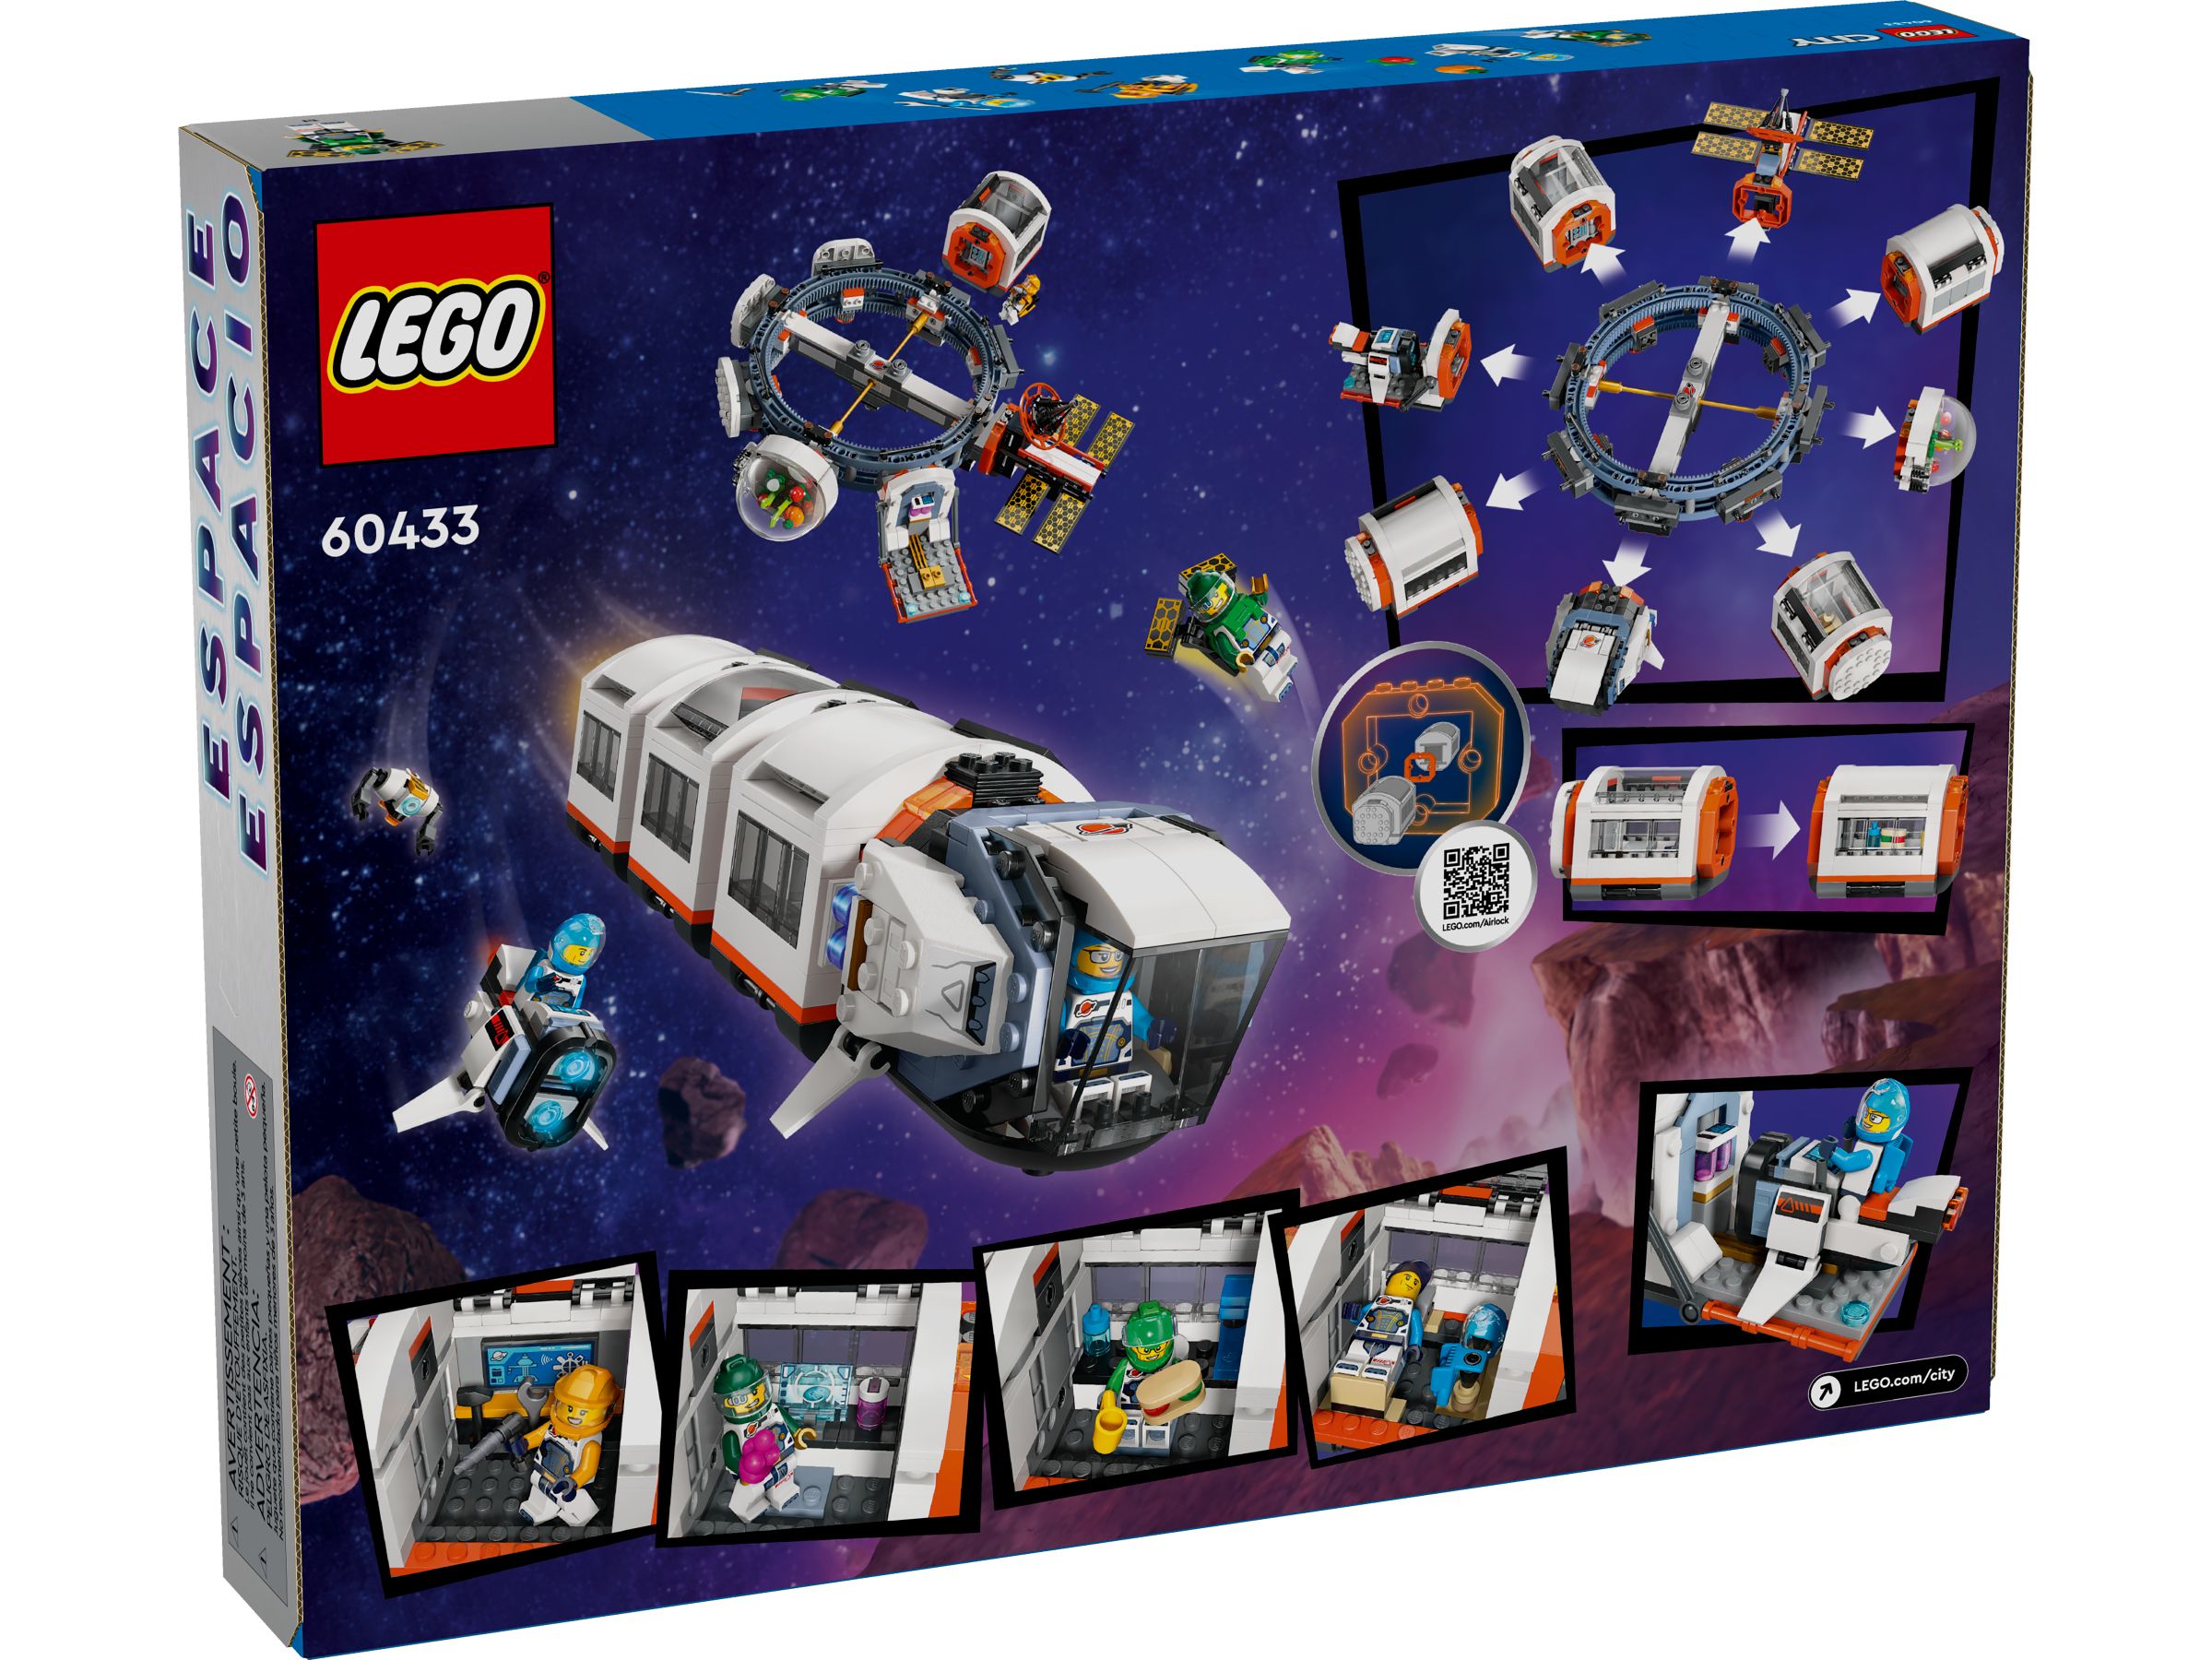 LEGO City 60433 Modulare Raumstation LEGO_60433_alt9.jpg